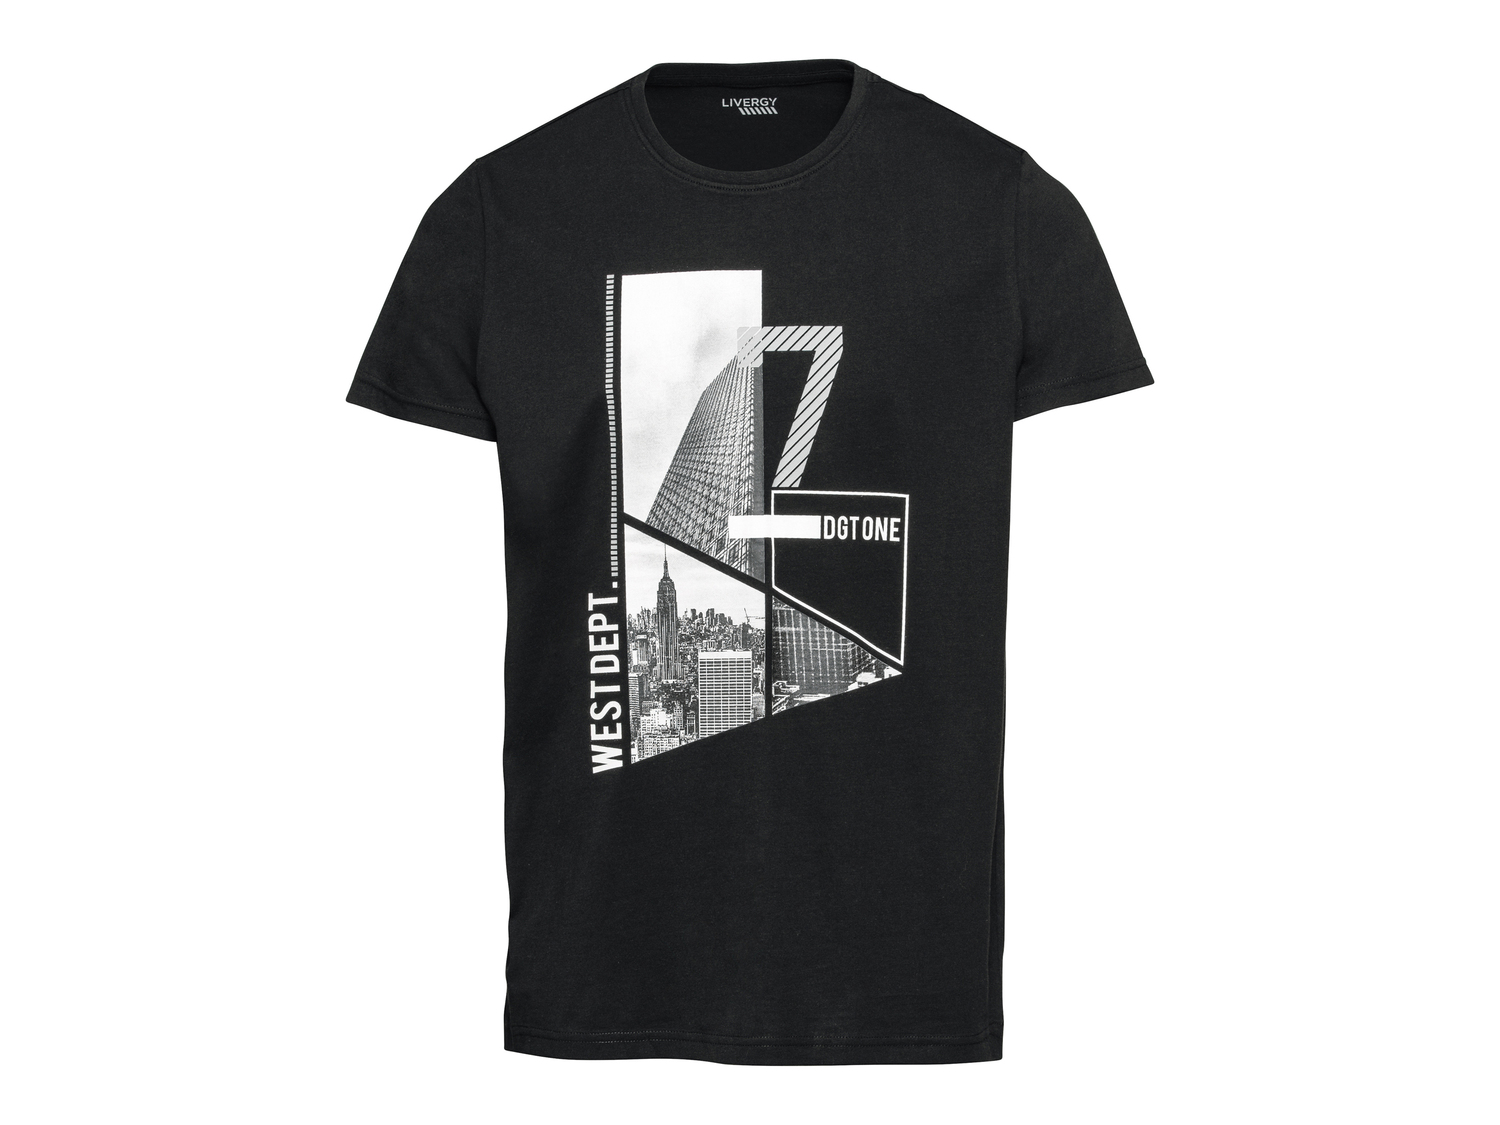 T-shirt da uomo Livergy, prezzo 4.99 € 
Misure: S-XL
Taglie disponibili

Caratteristiche

- ...